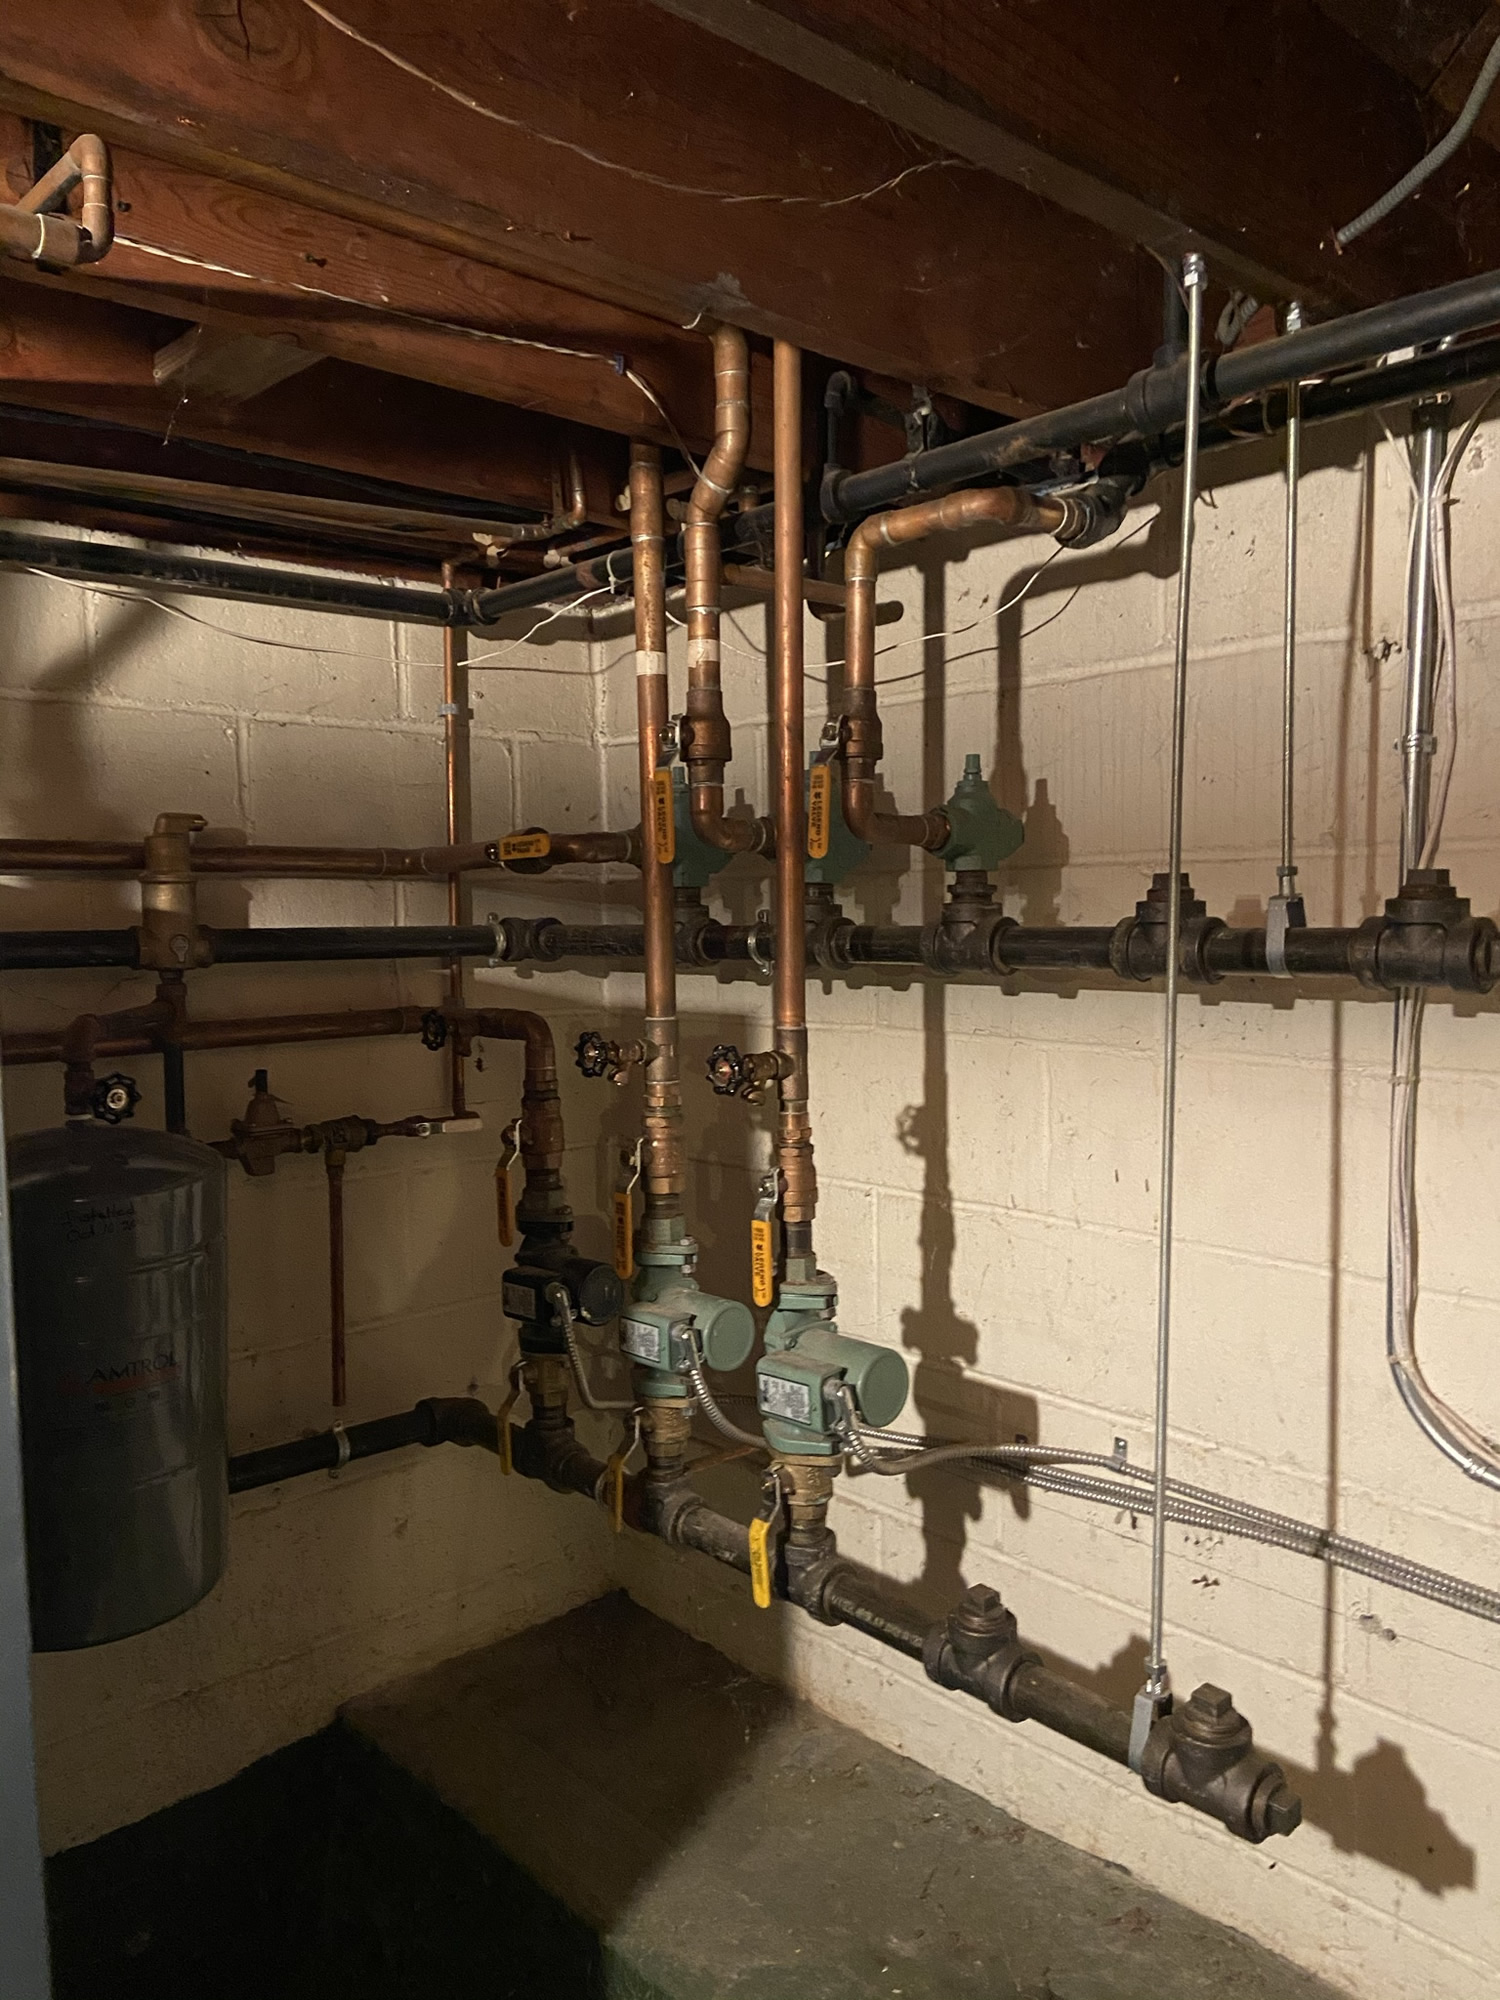 Glenville CT Plumbing & Heating